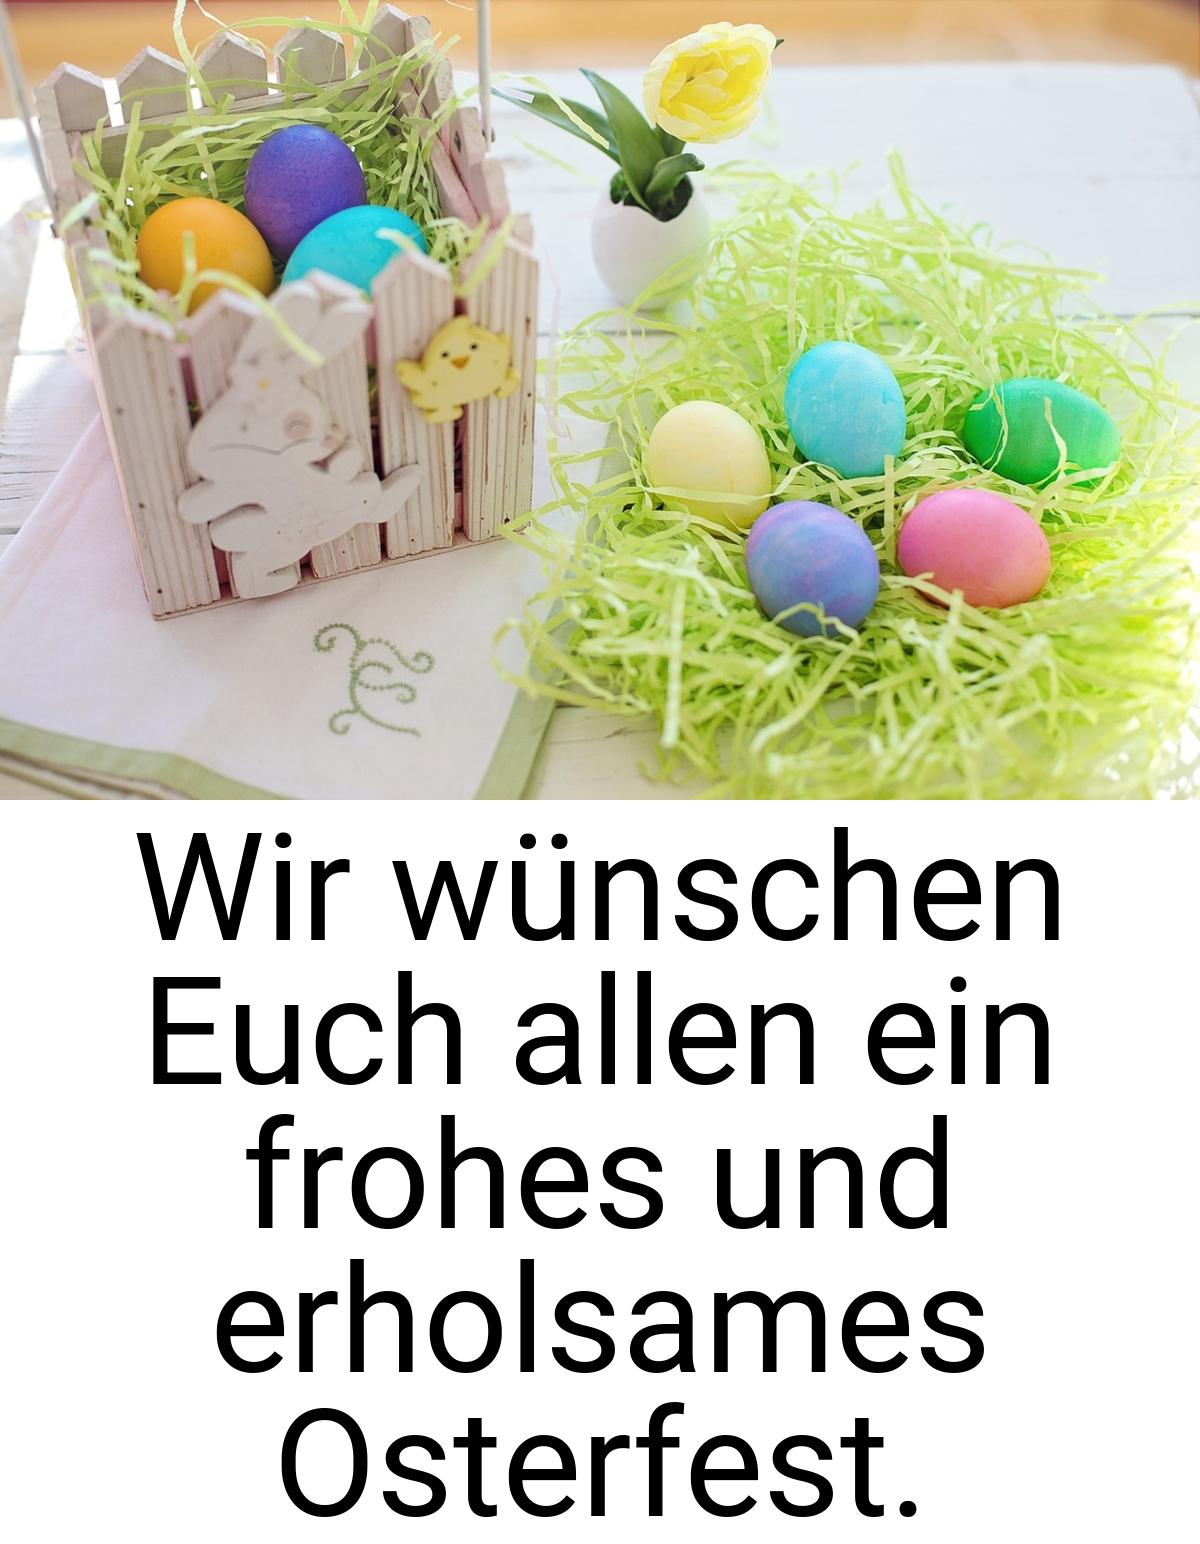 Wir wünschen Euch allen ein frohes und erholsames Osterfest